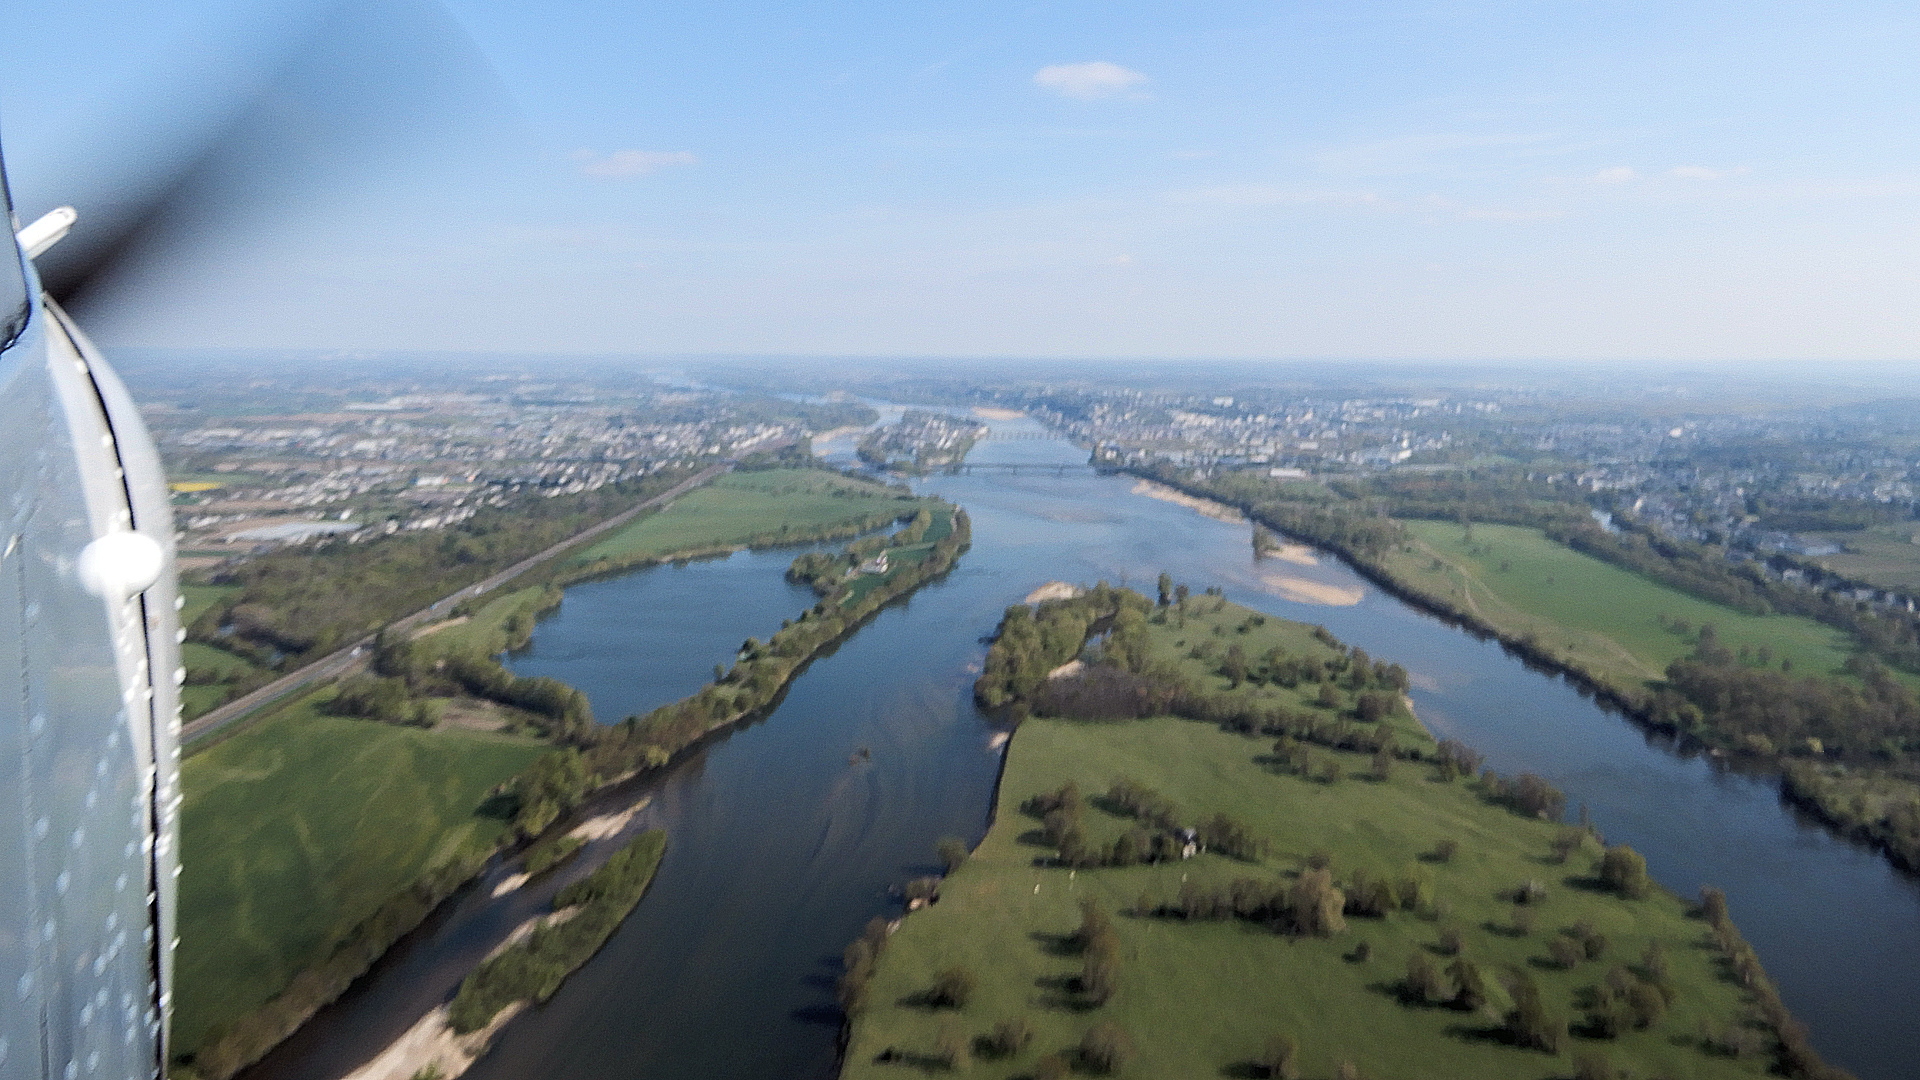 View over river La Loire